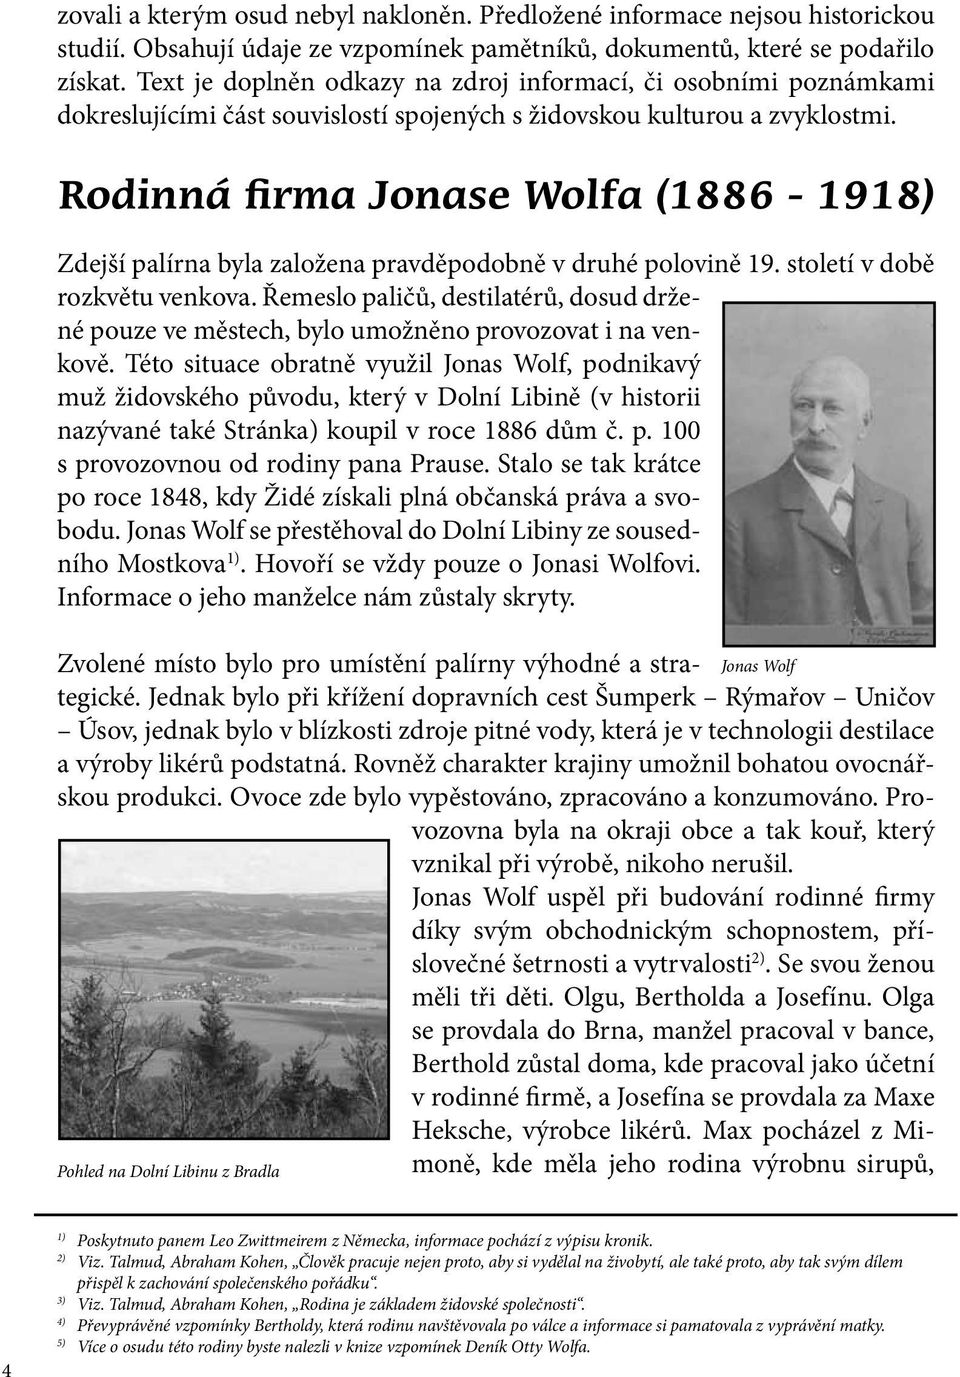 Rodinná firma Jonase Wolfa (1886-1918) Zdejší palírna byla založena pravděpodobně v druhé polovině 19. století v době rozkvětu venkova.